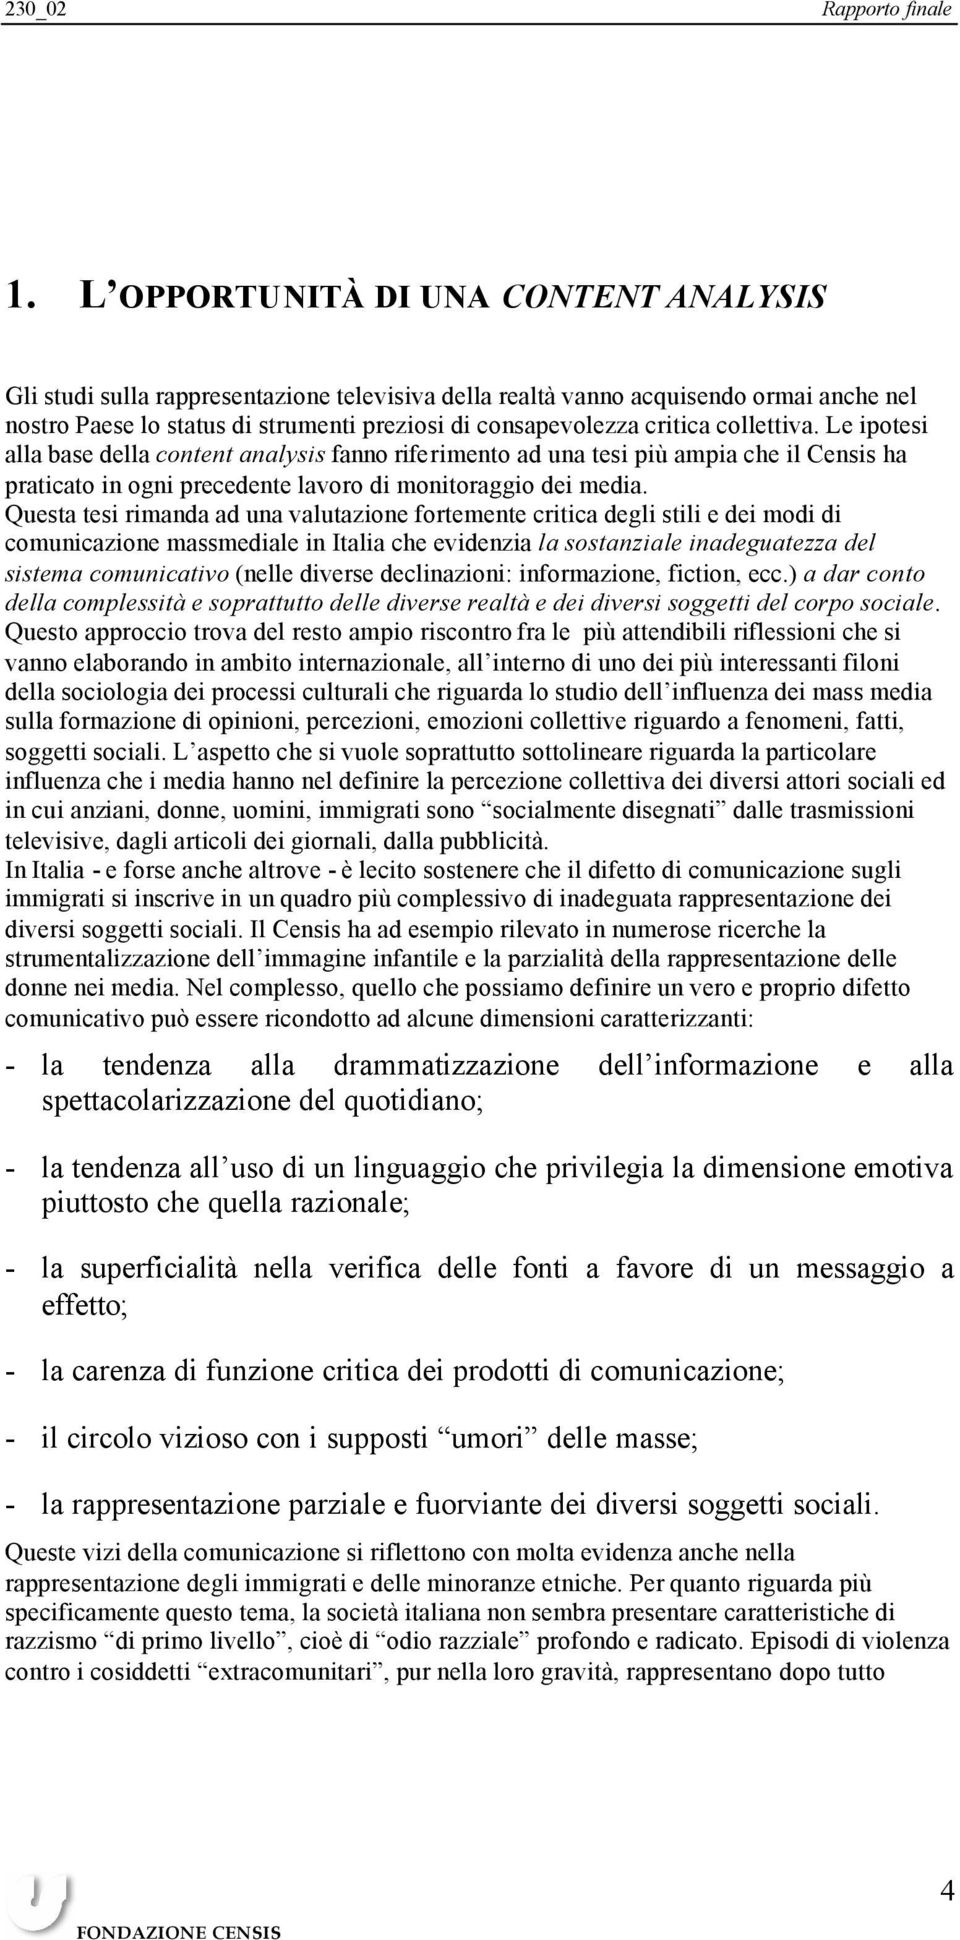 Questa tesi rimanda ad una valutazione fortemente critica degli stili e dei modi di comunicazione massmediale in Italia che evidenzia la sostanziale inadeguatezza del sistema comunicativo (nelle